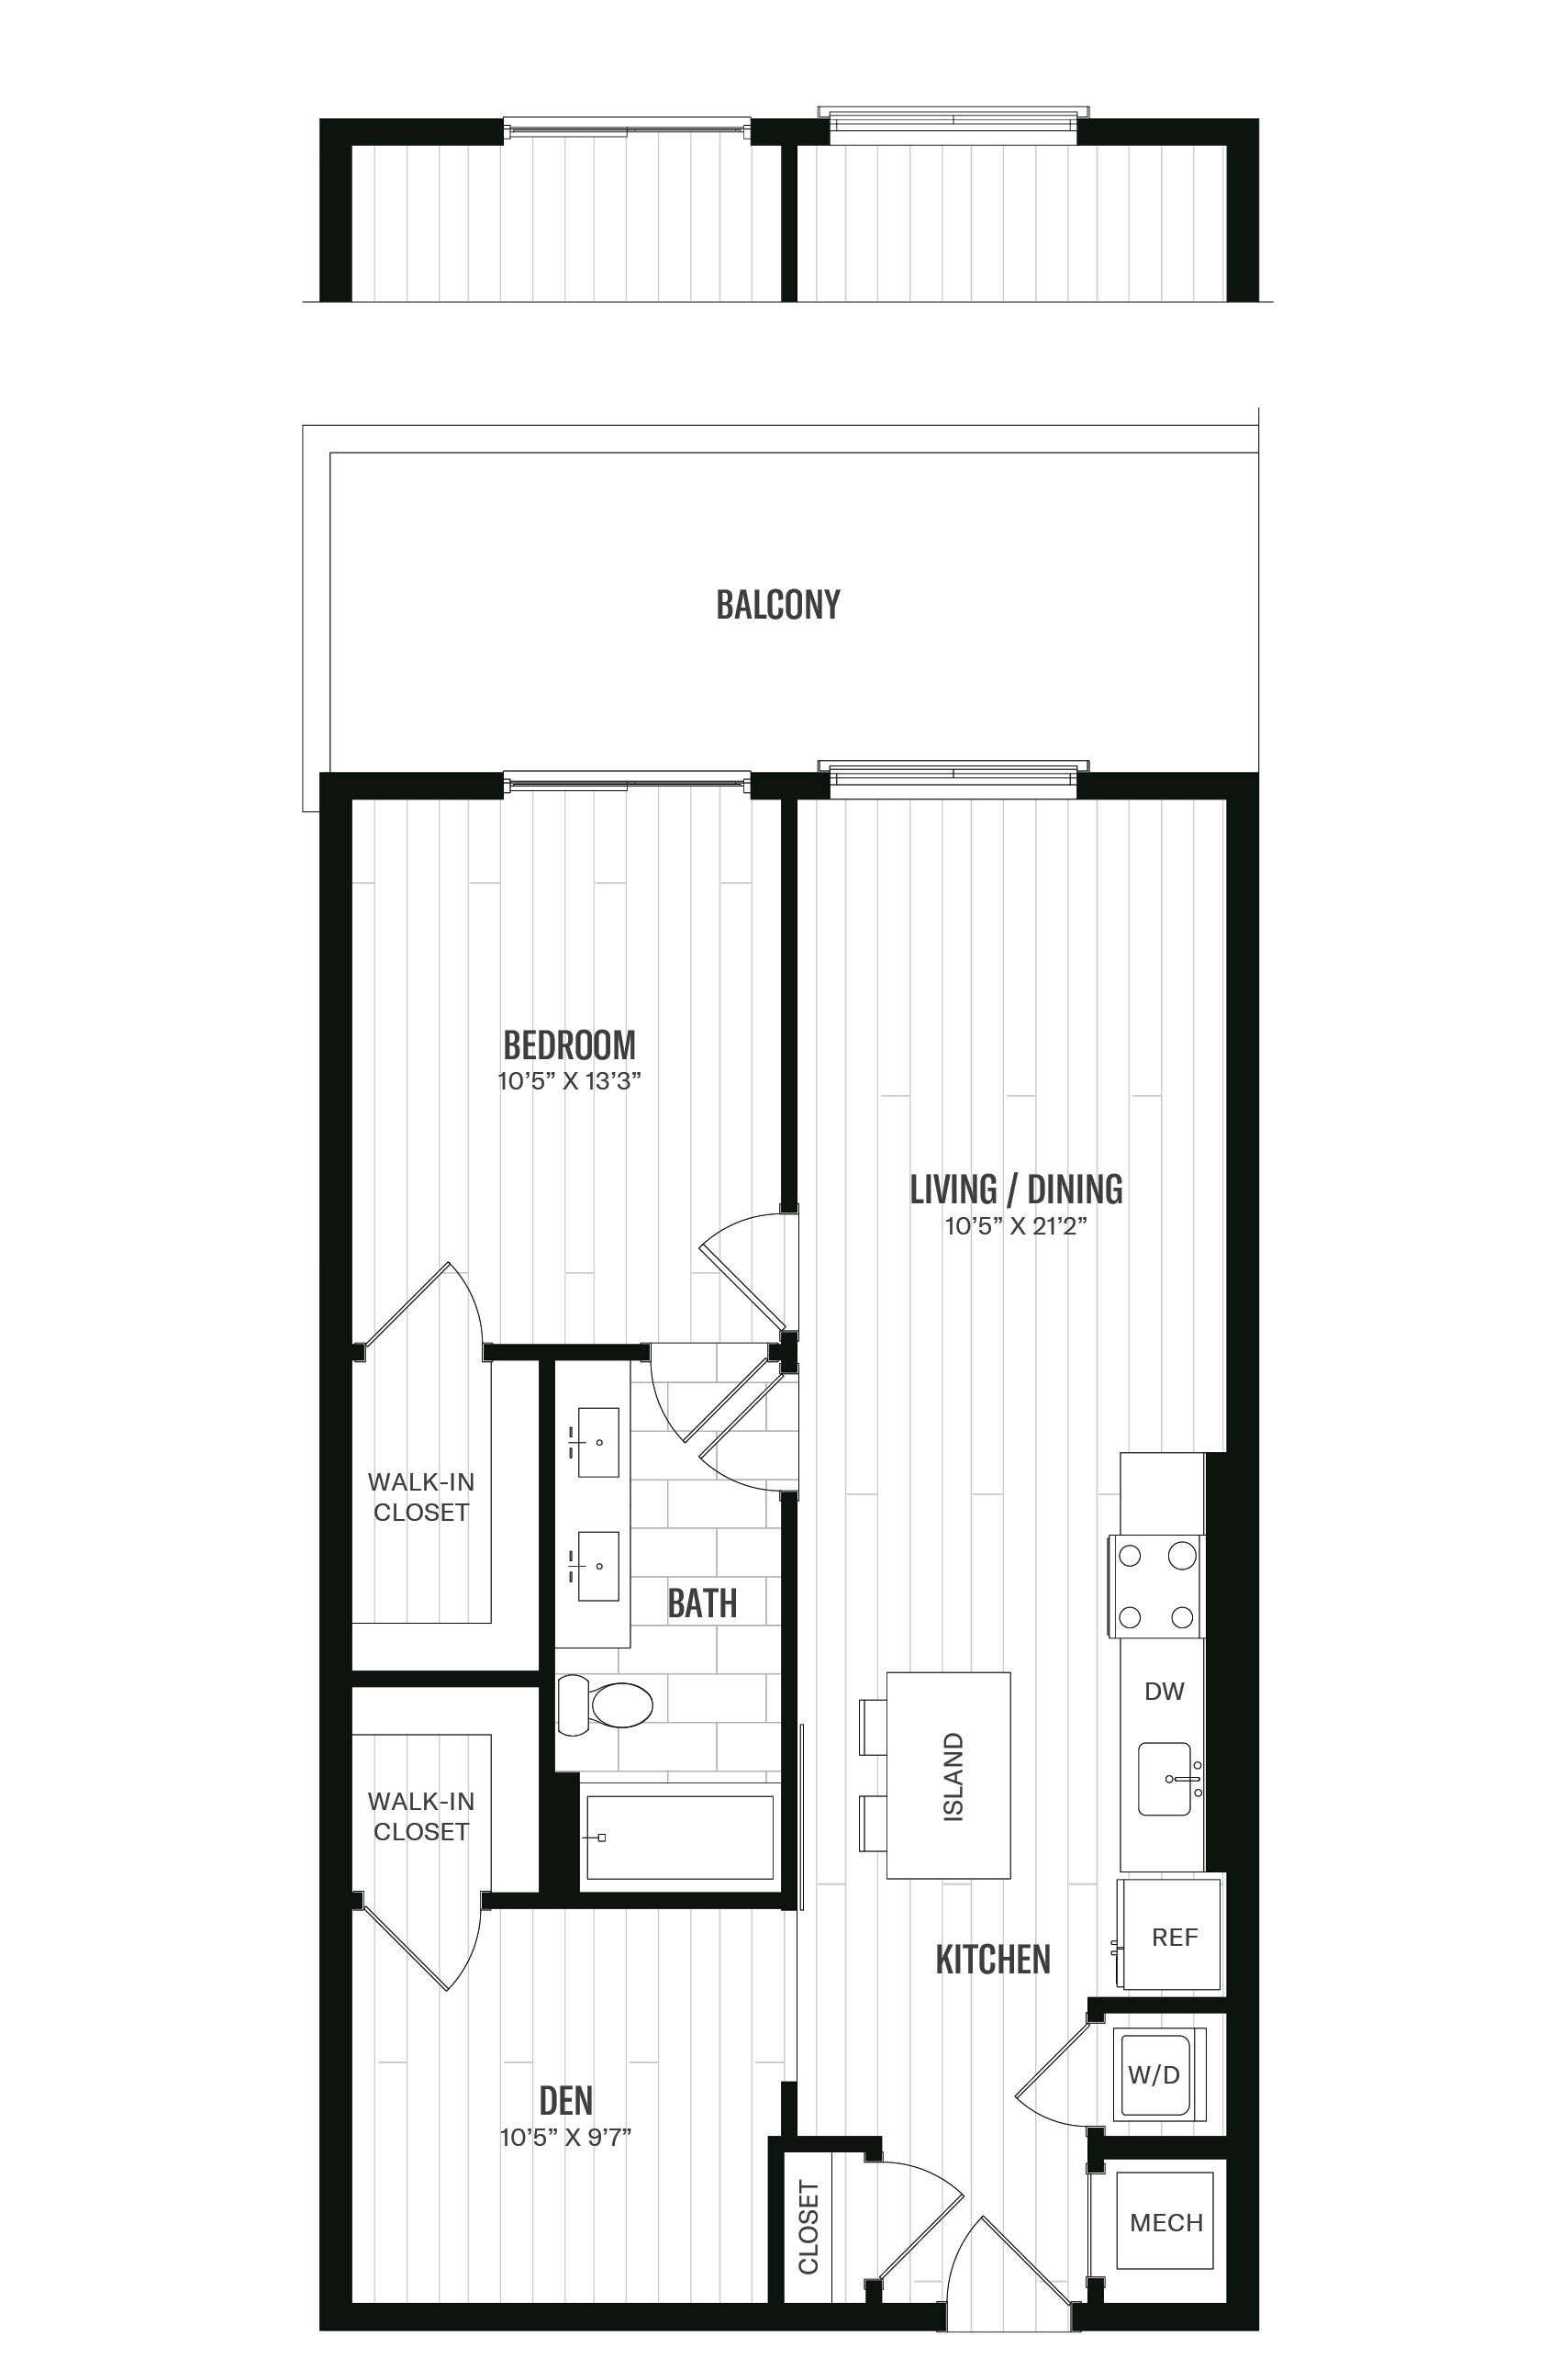 Floorplan image of unit 334